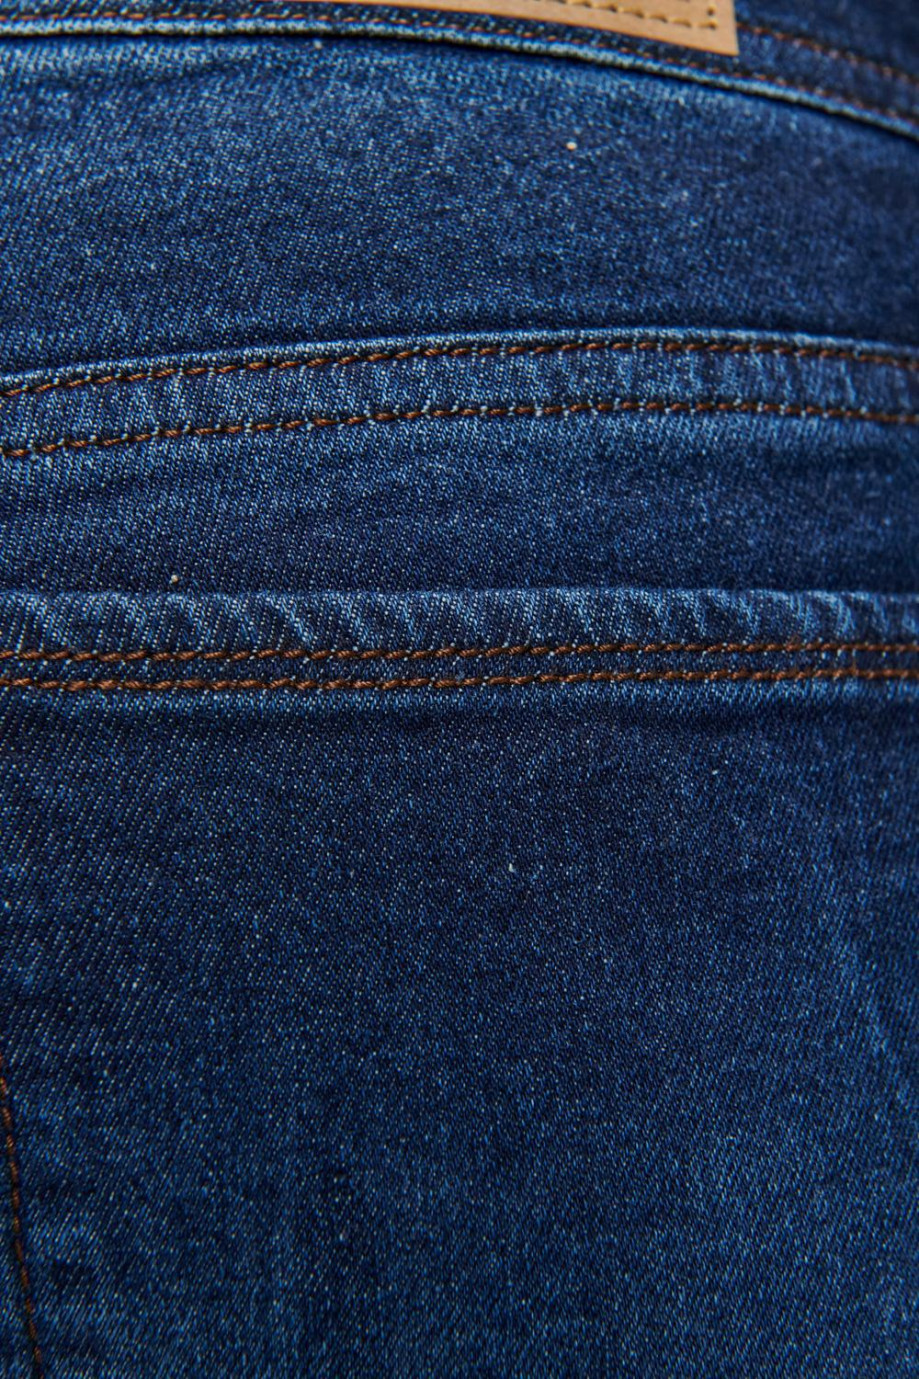 Jean azul intenso slim con hilos en contraste y tiro bajo